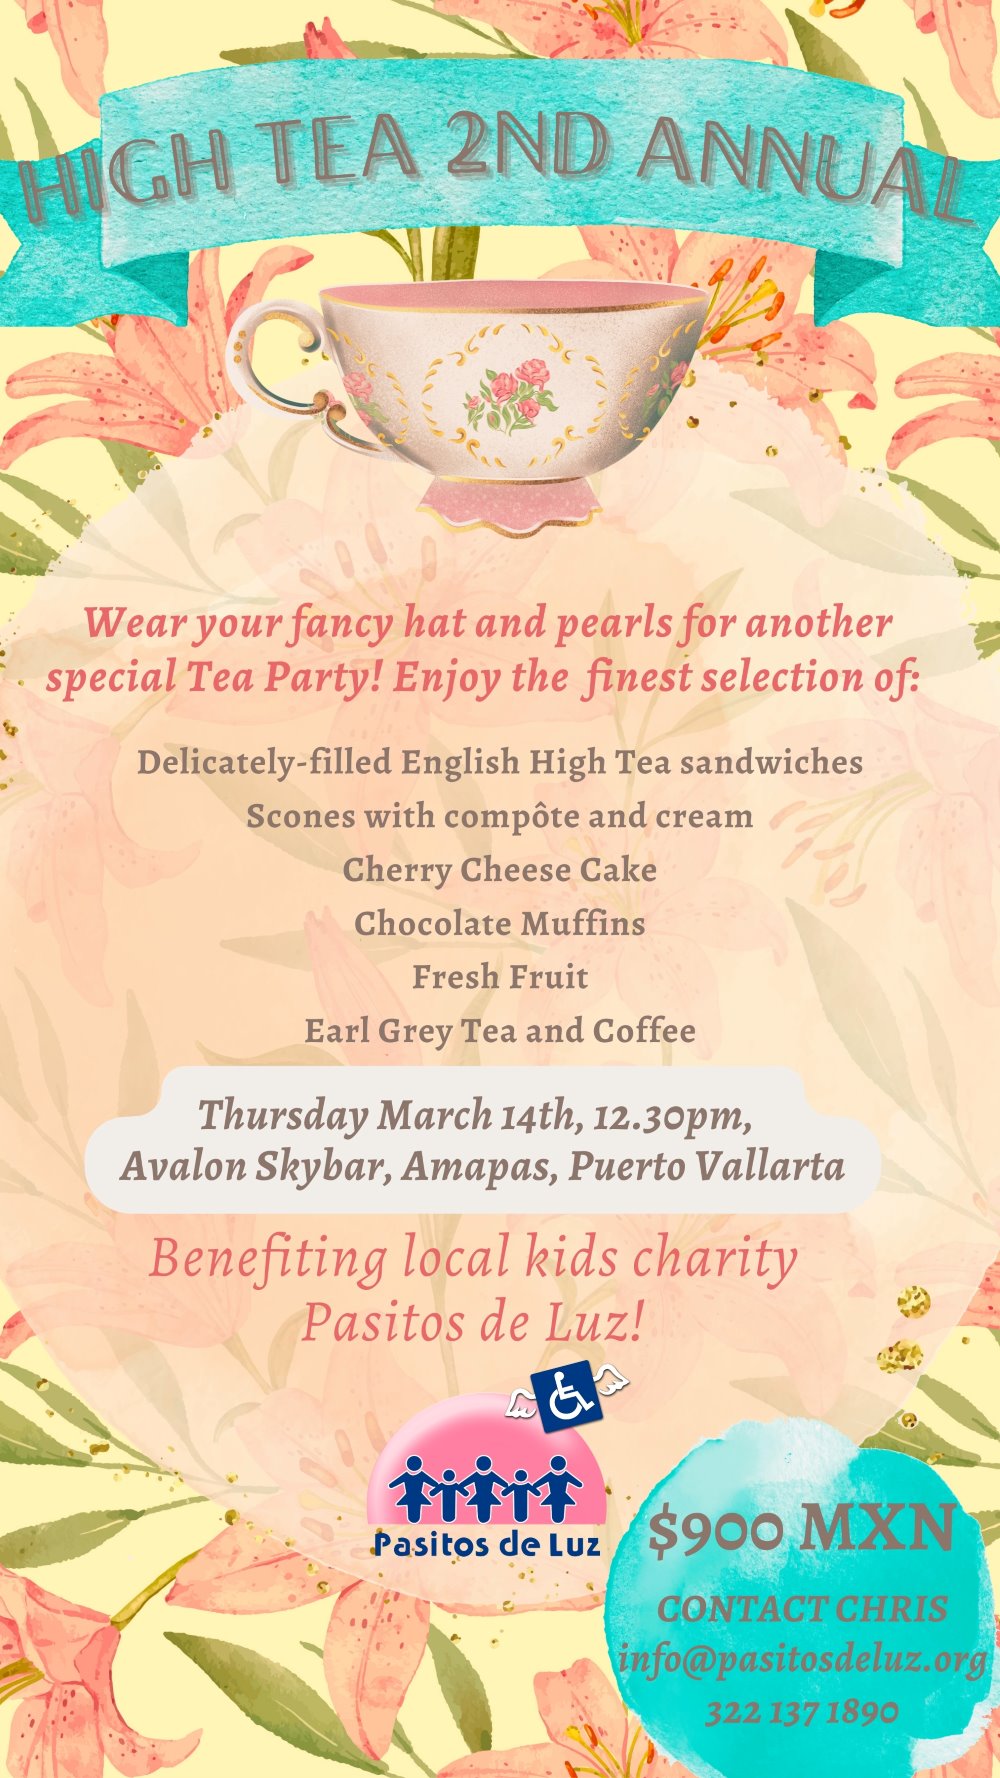 High Tea Avalon Skybar Puerto Vallarta donate charity kids